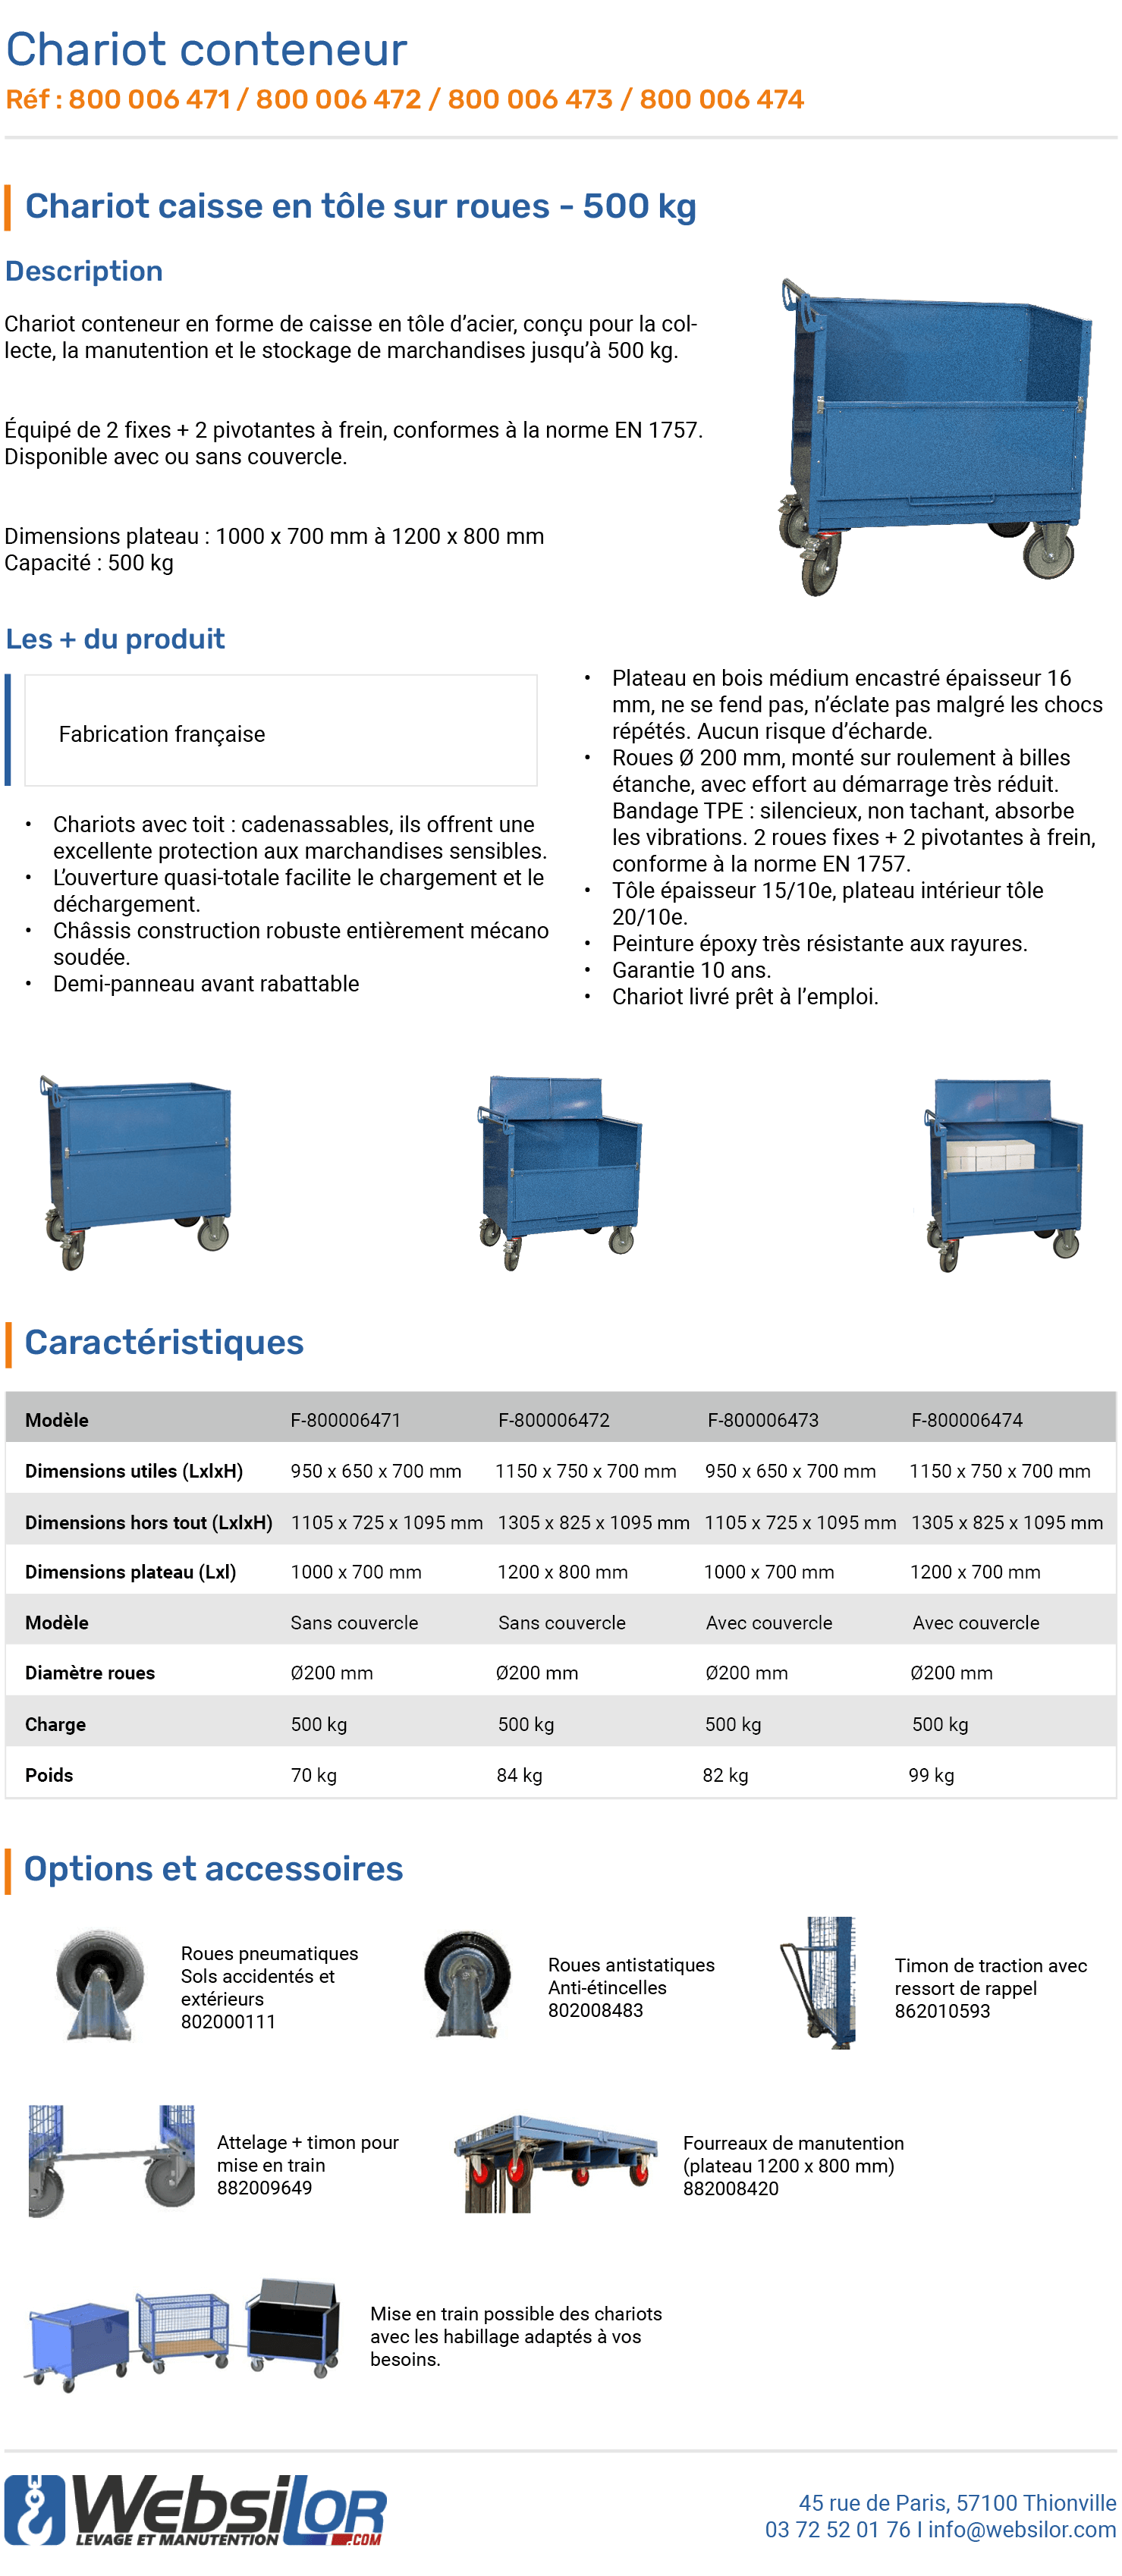 Informations technique de Chariot conteneur en tôle grand plateau - 500 kg